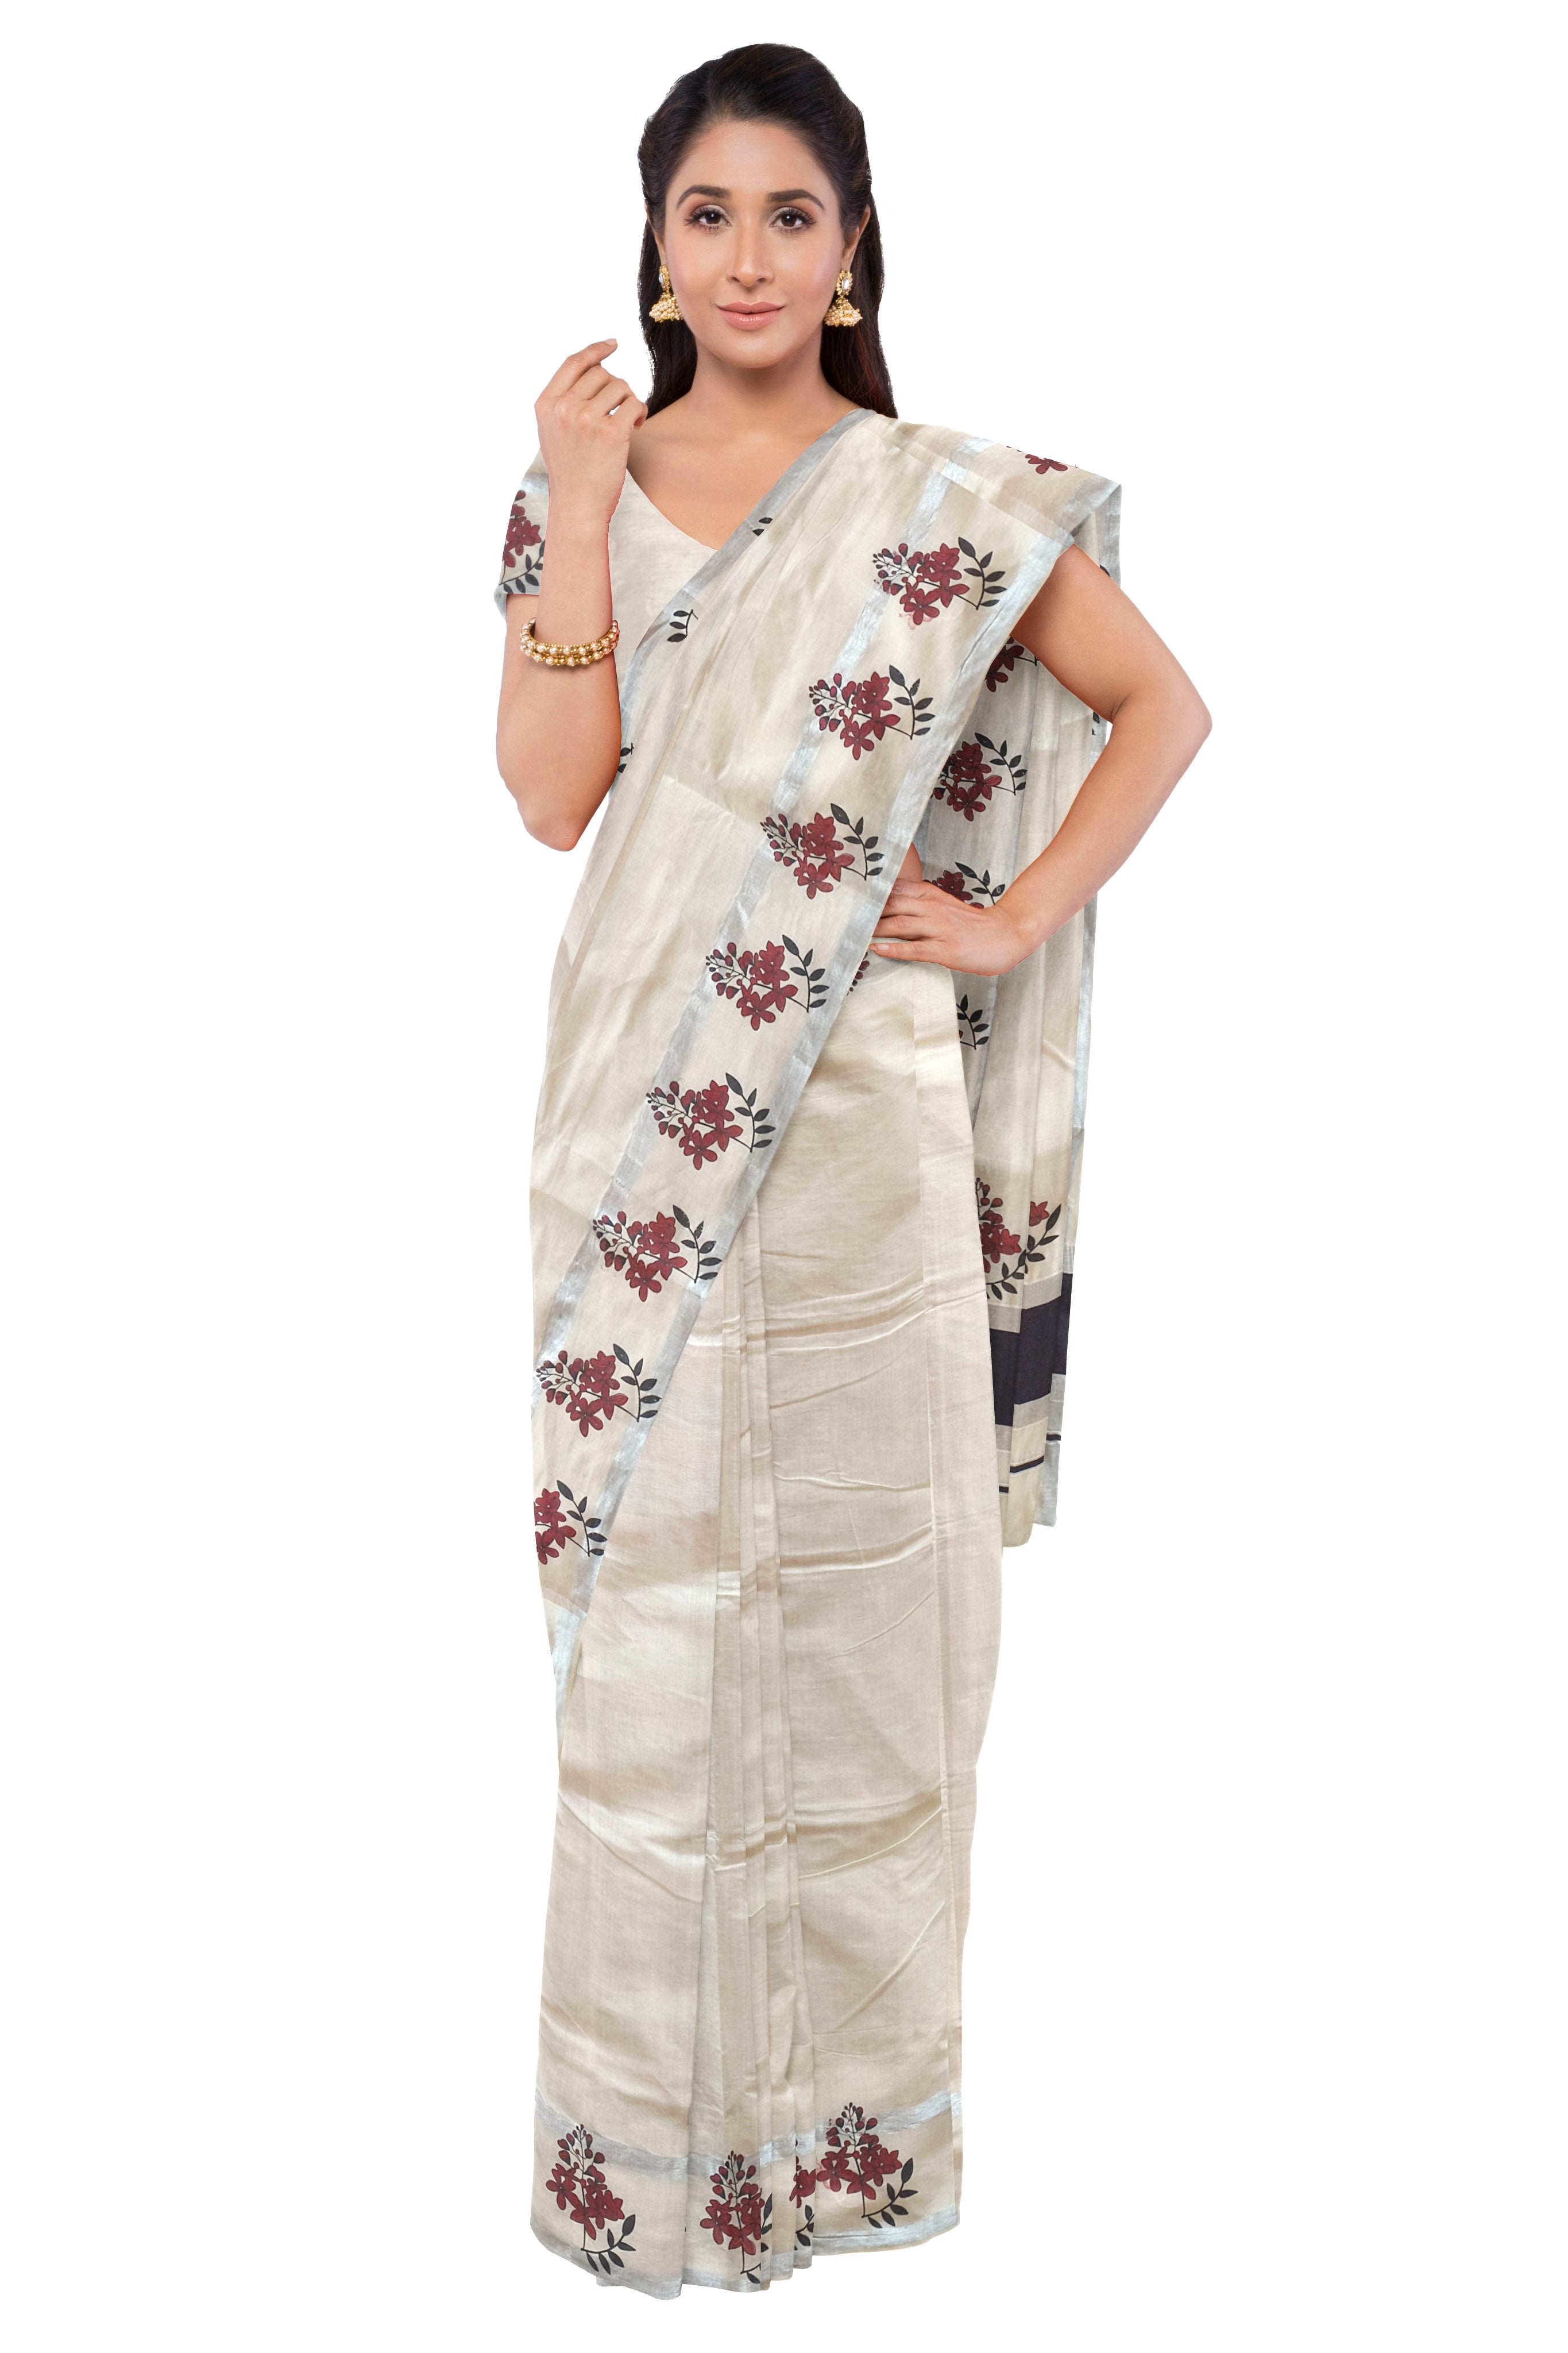 Kerala Silver Kasavu and Maroon Colour Border Saree - Etsy India | Kasavu  saree, Set saree, Cotton saree designs